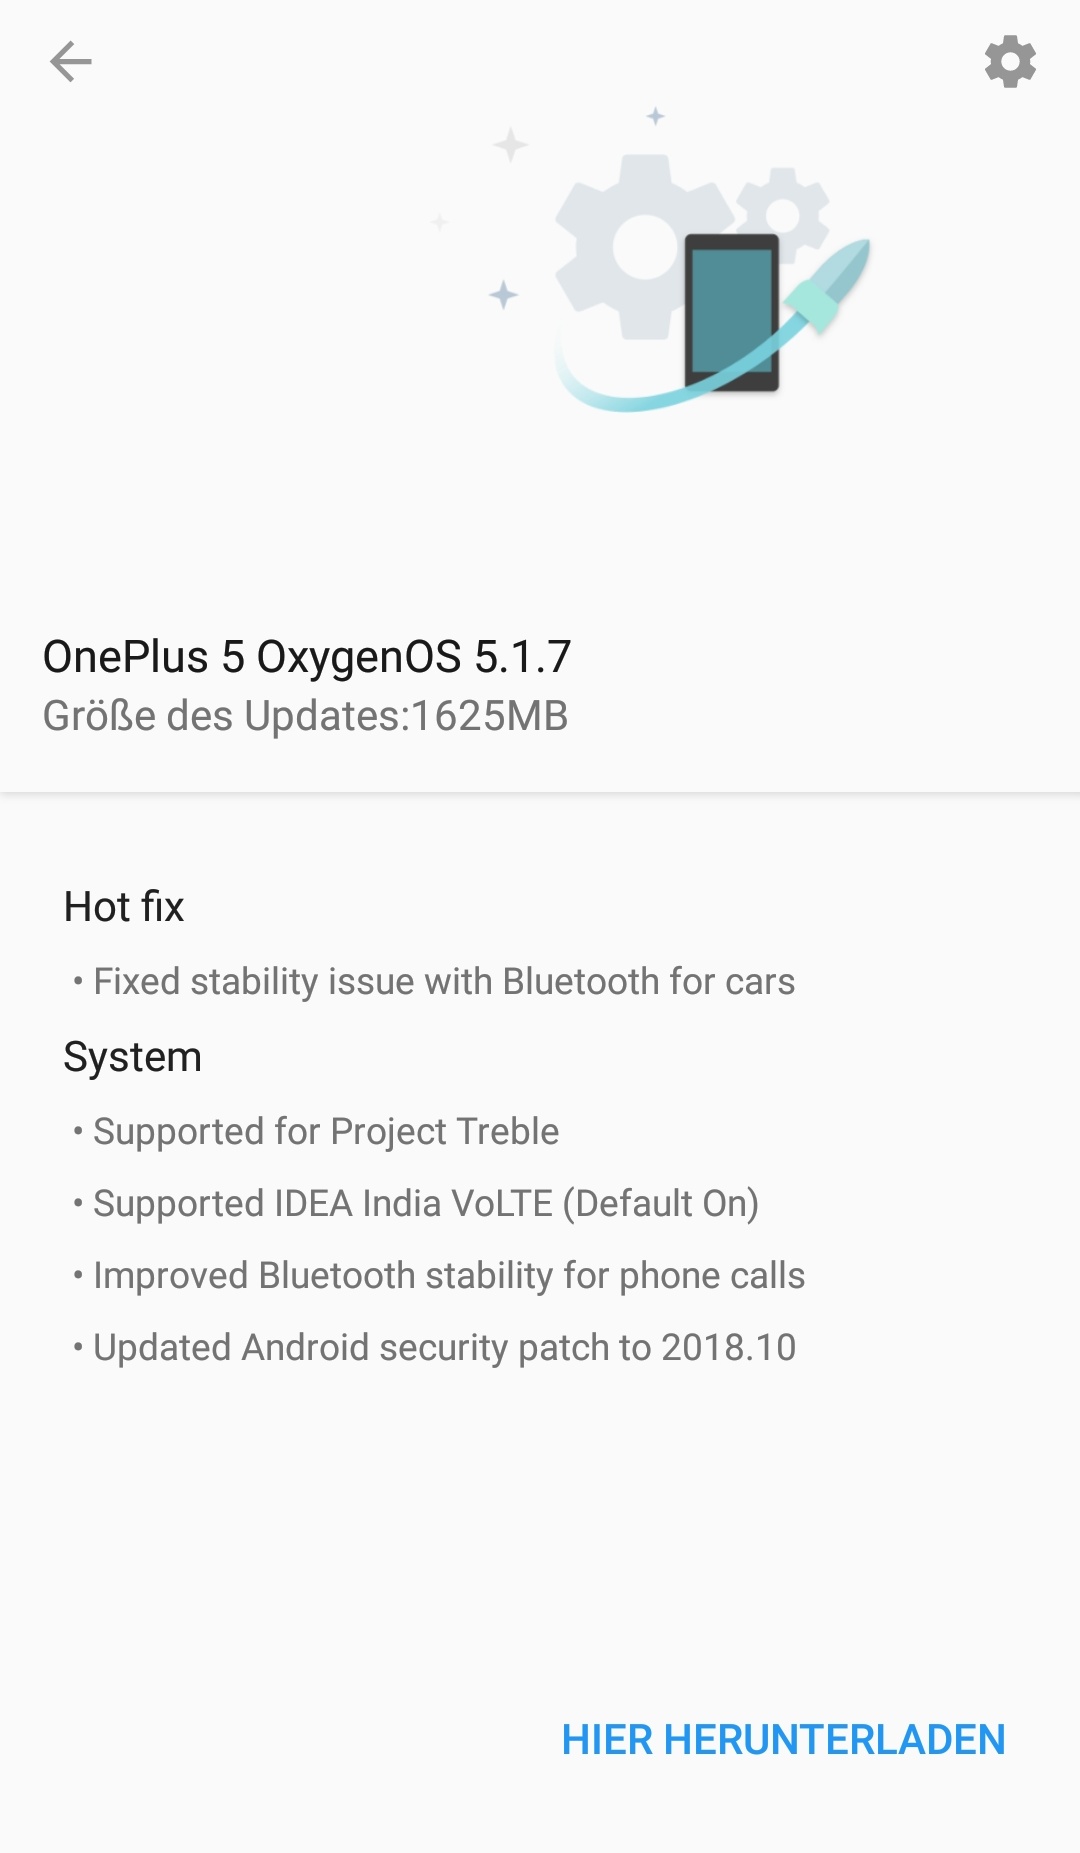 Oneplus 5 - OxygenOS 5.1.7